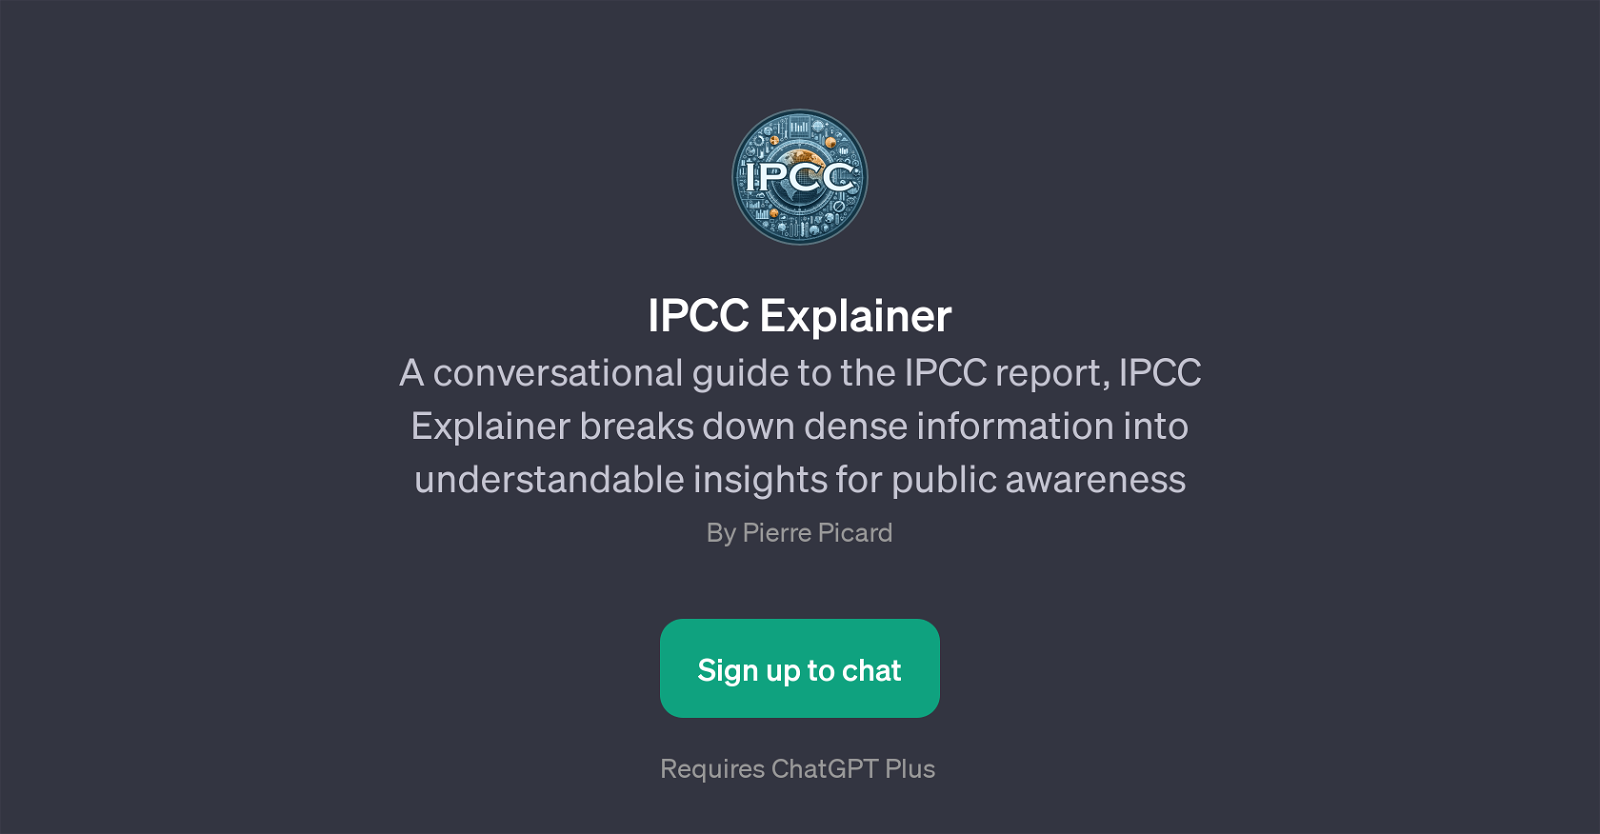 IPCC Explainer website